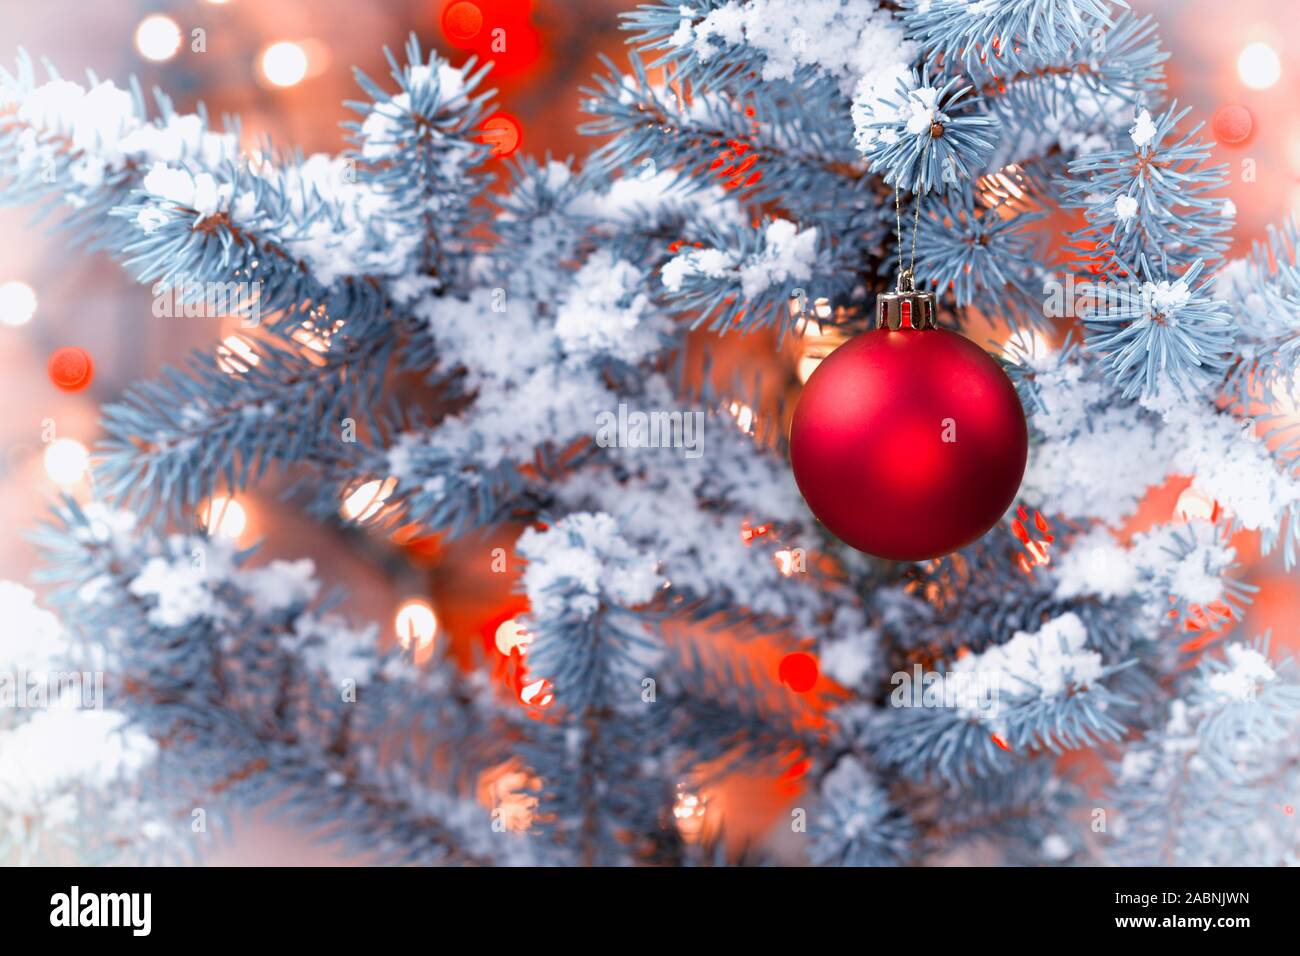 Libre de droit horizontal d'un seul red Christmas ornament hanging from tree pin couvert de neige avec feux lumineux en format vintage Banque D'Images